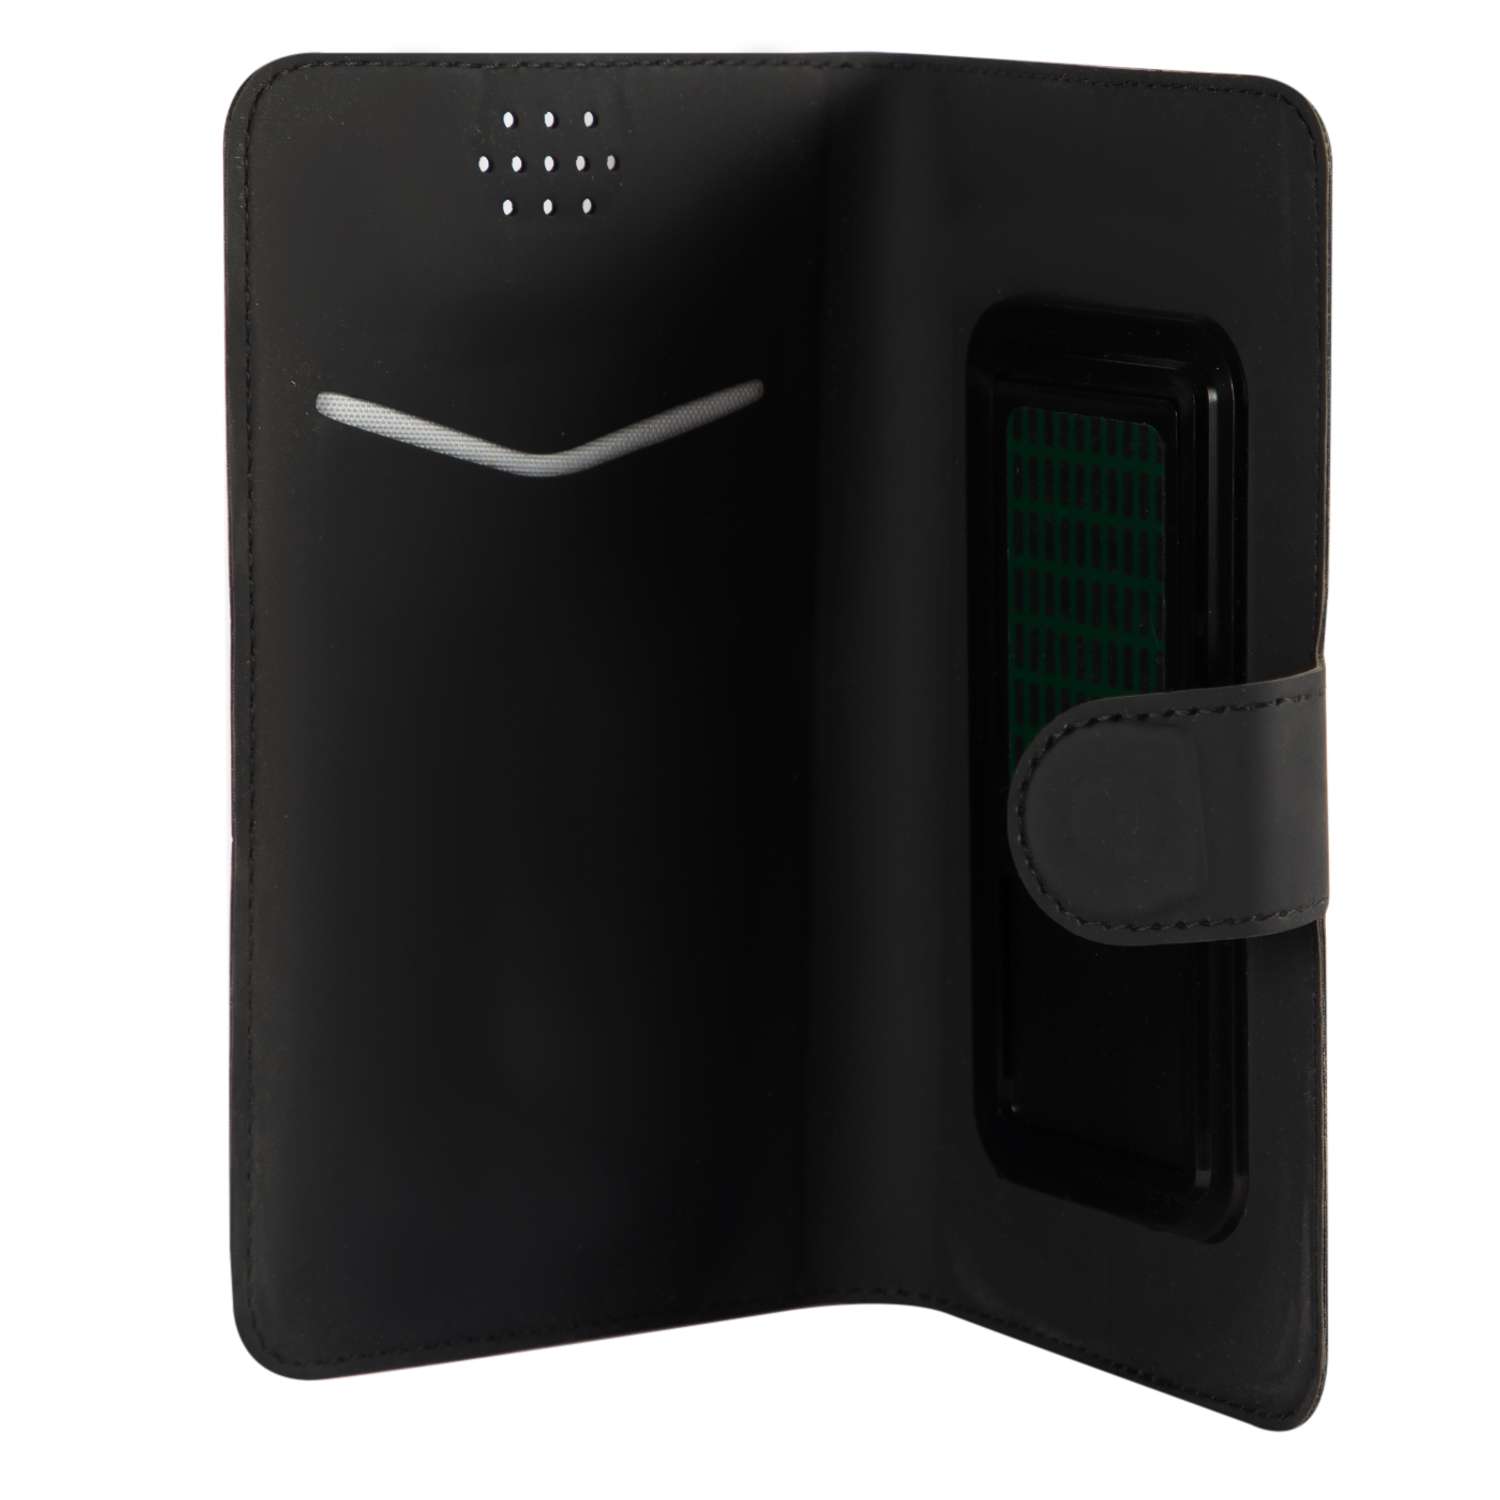 Чехол универсальный iBox UniMotion для телефонов 4.3-5 дюйма черный - фото 4